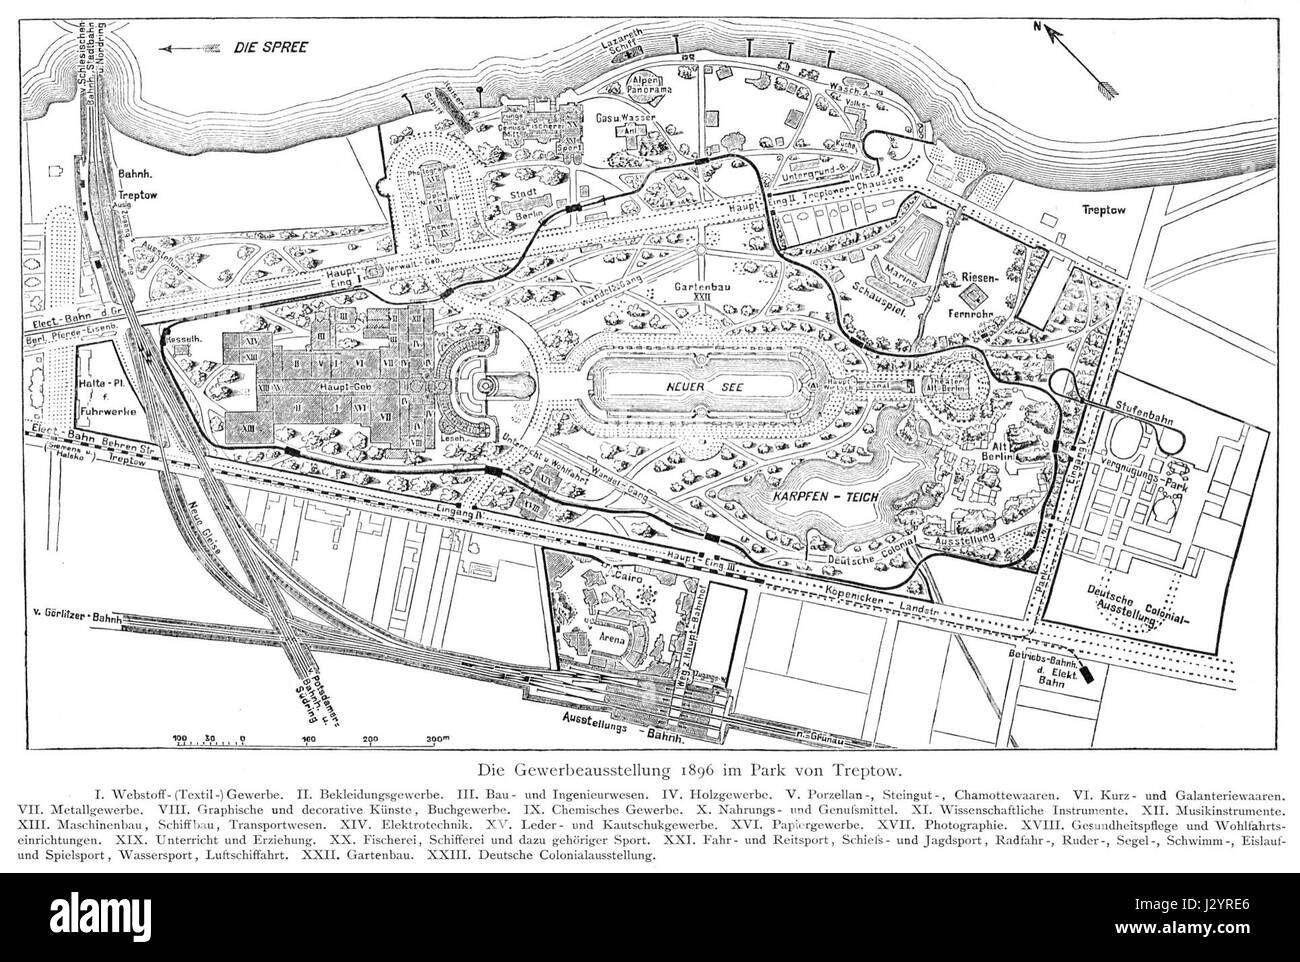 Berlin Gewerbeausstellung 1896 Plan Stock Photo